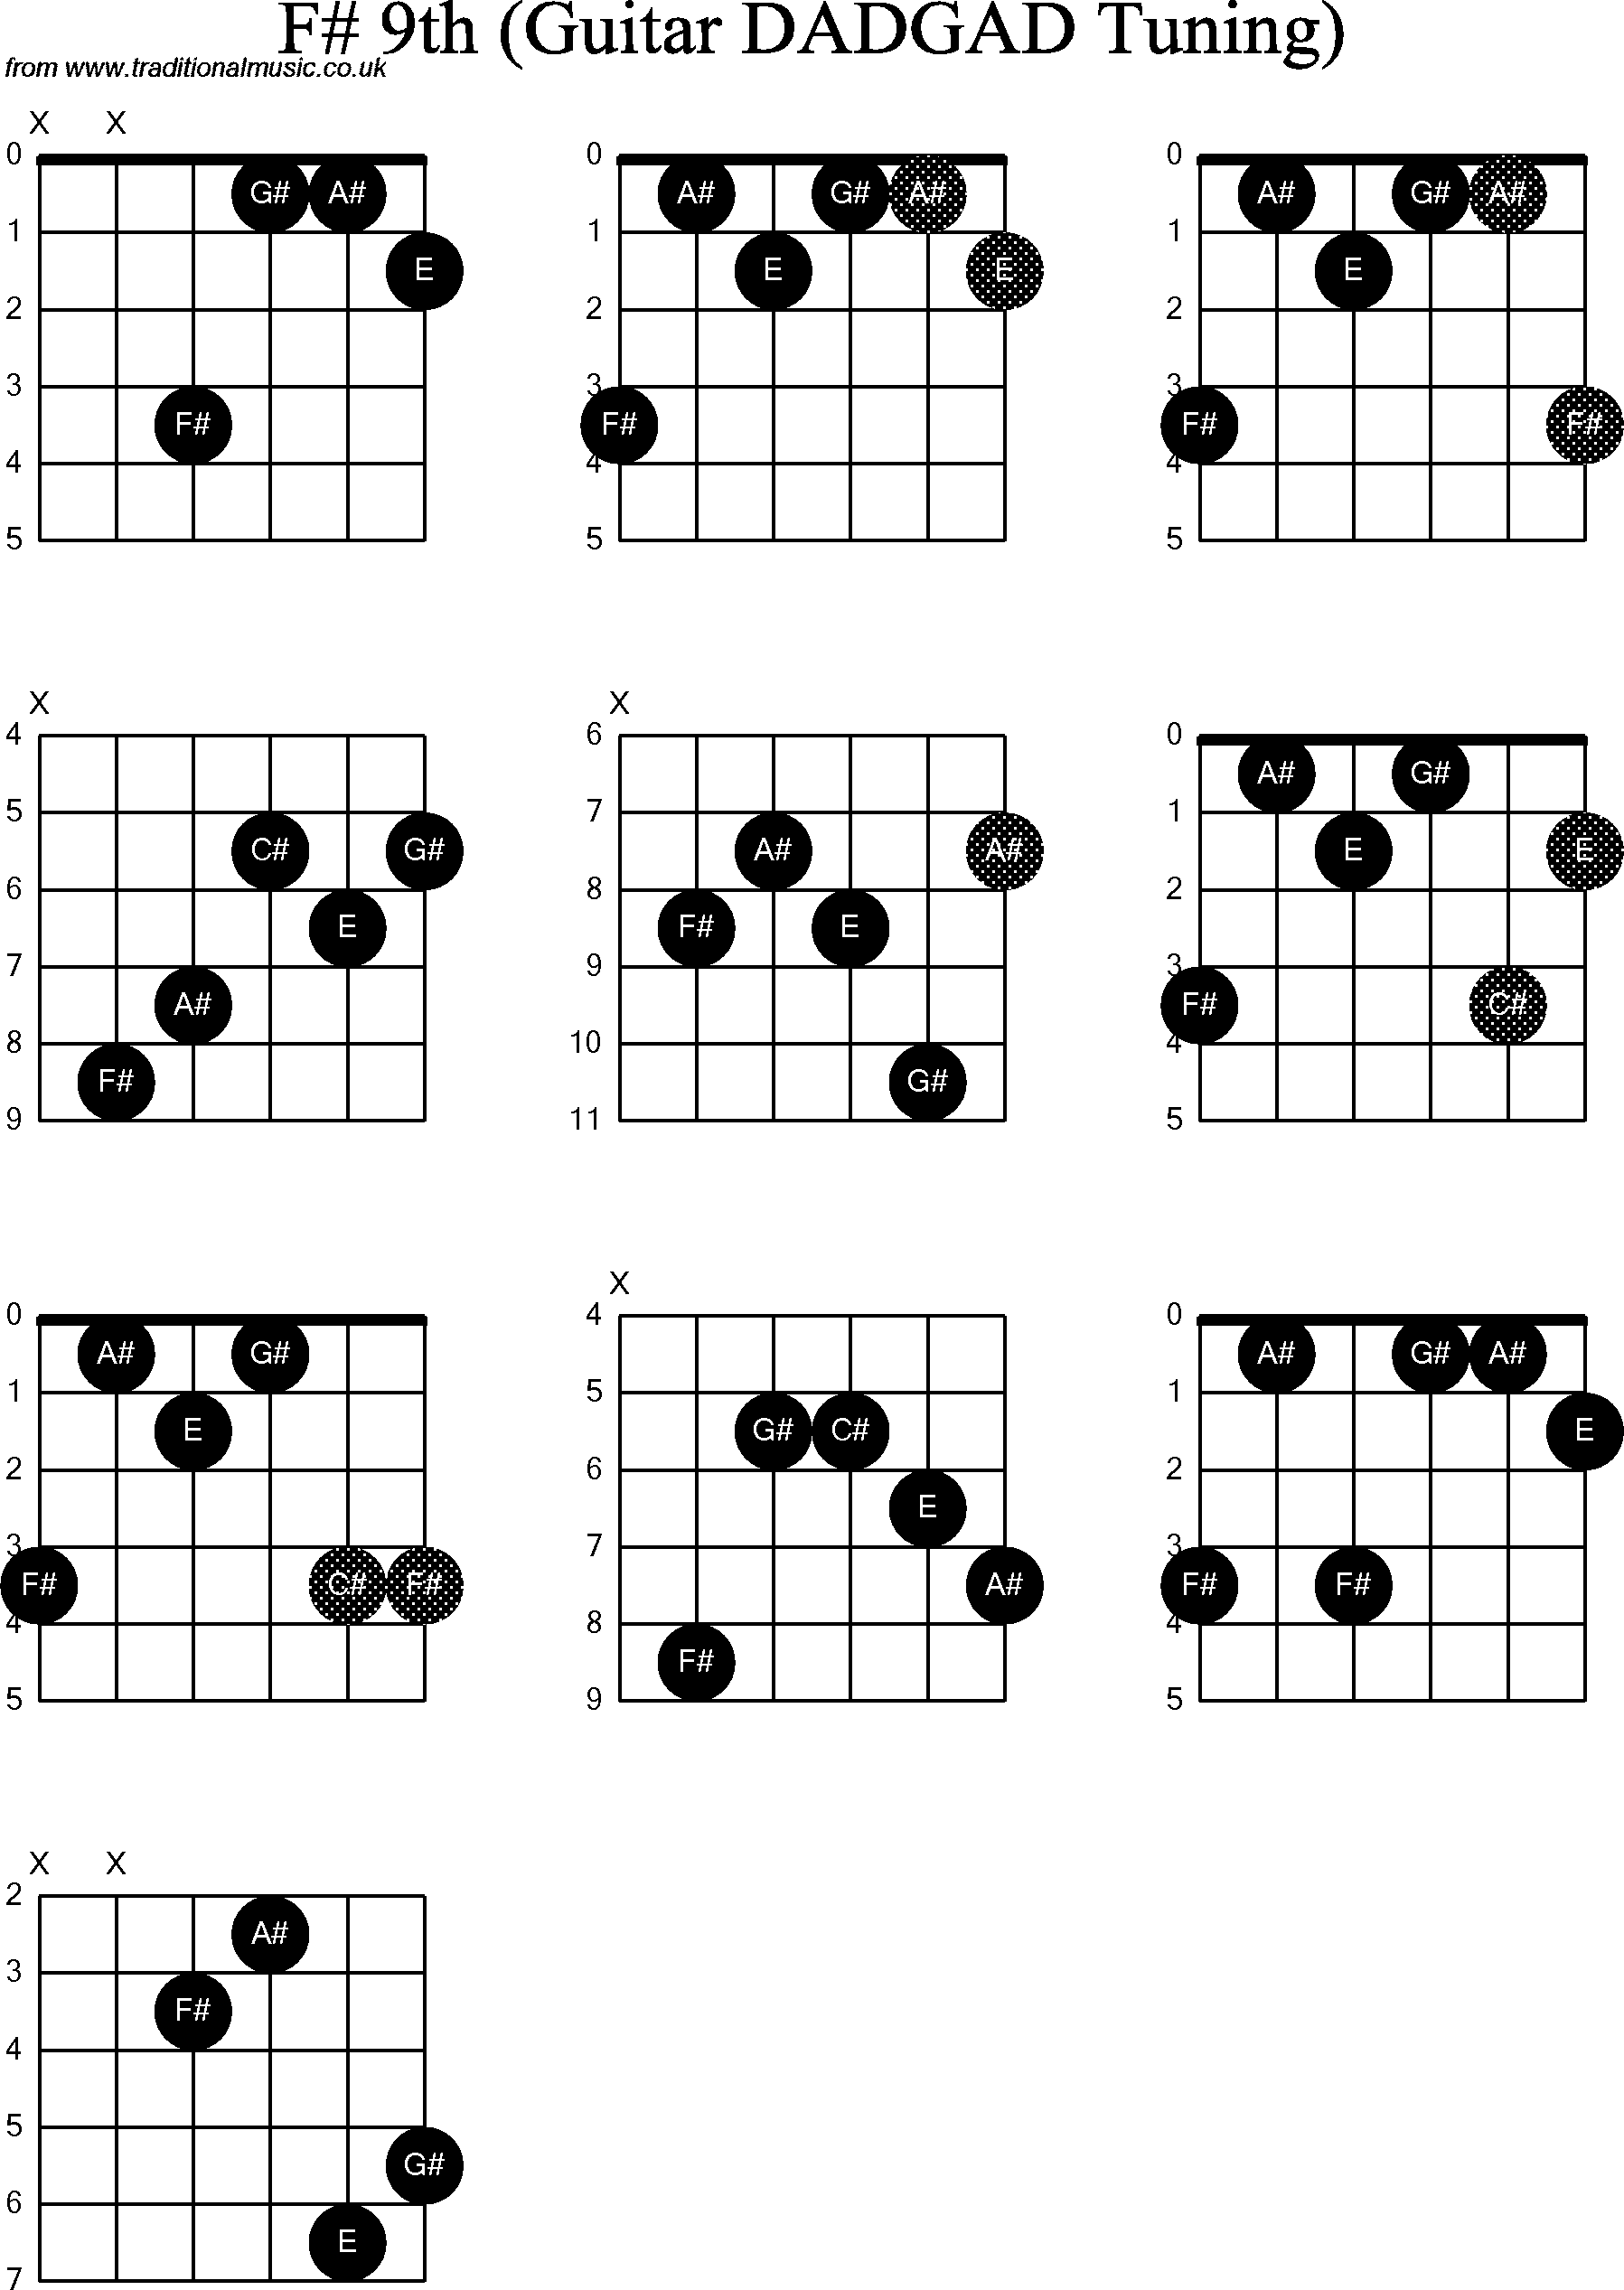 Chord Diagrams for D Modal Guitar(DADGAD), F Sharp9th